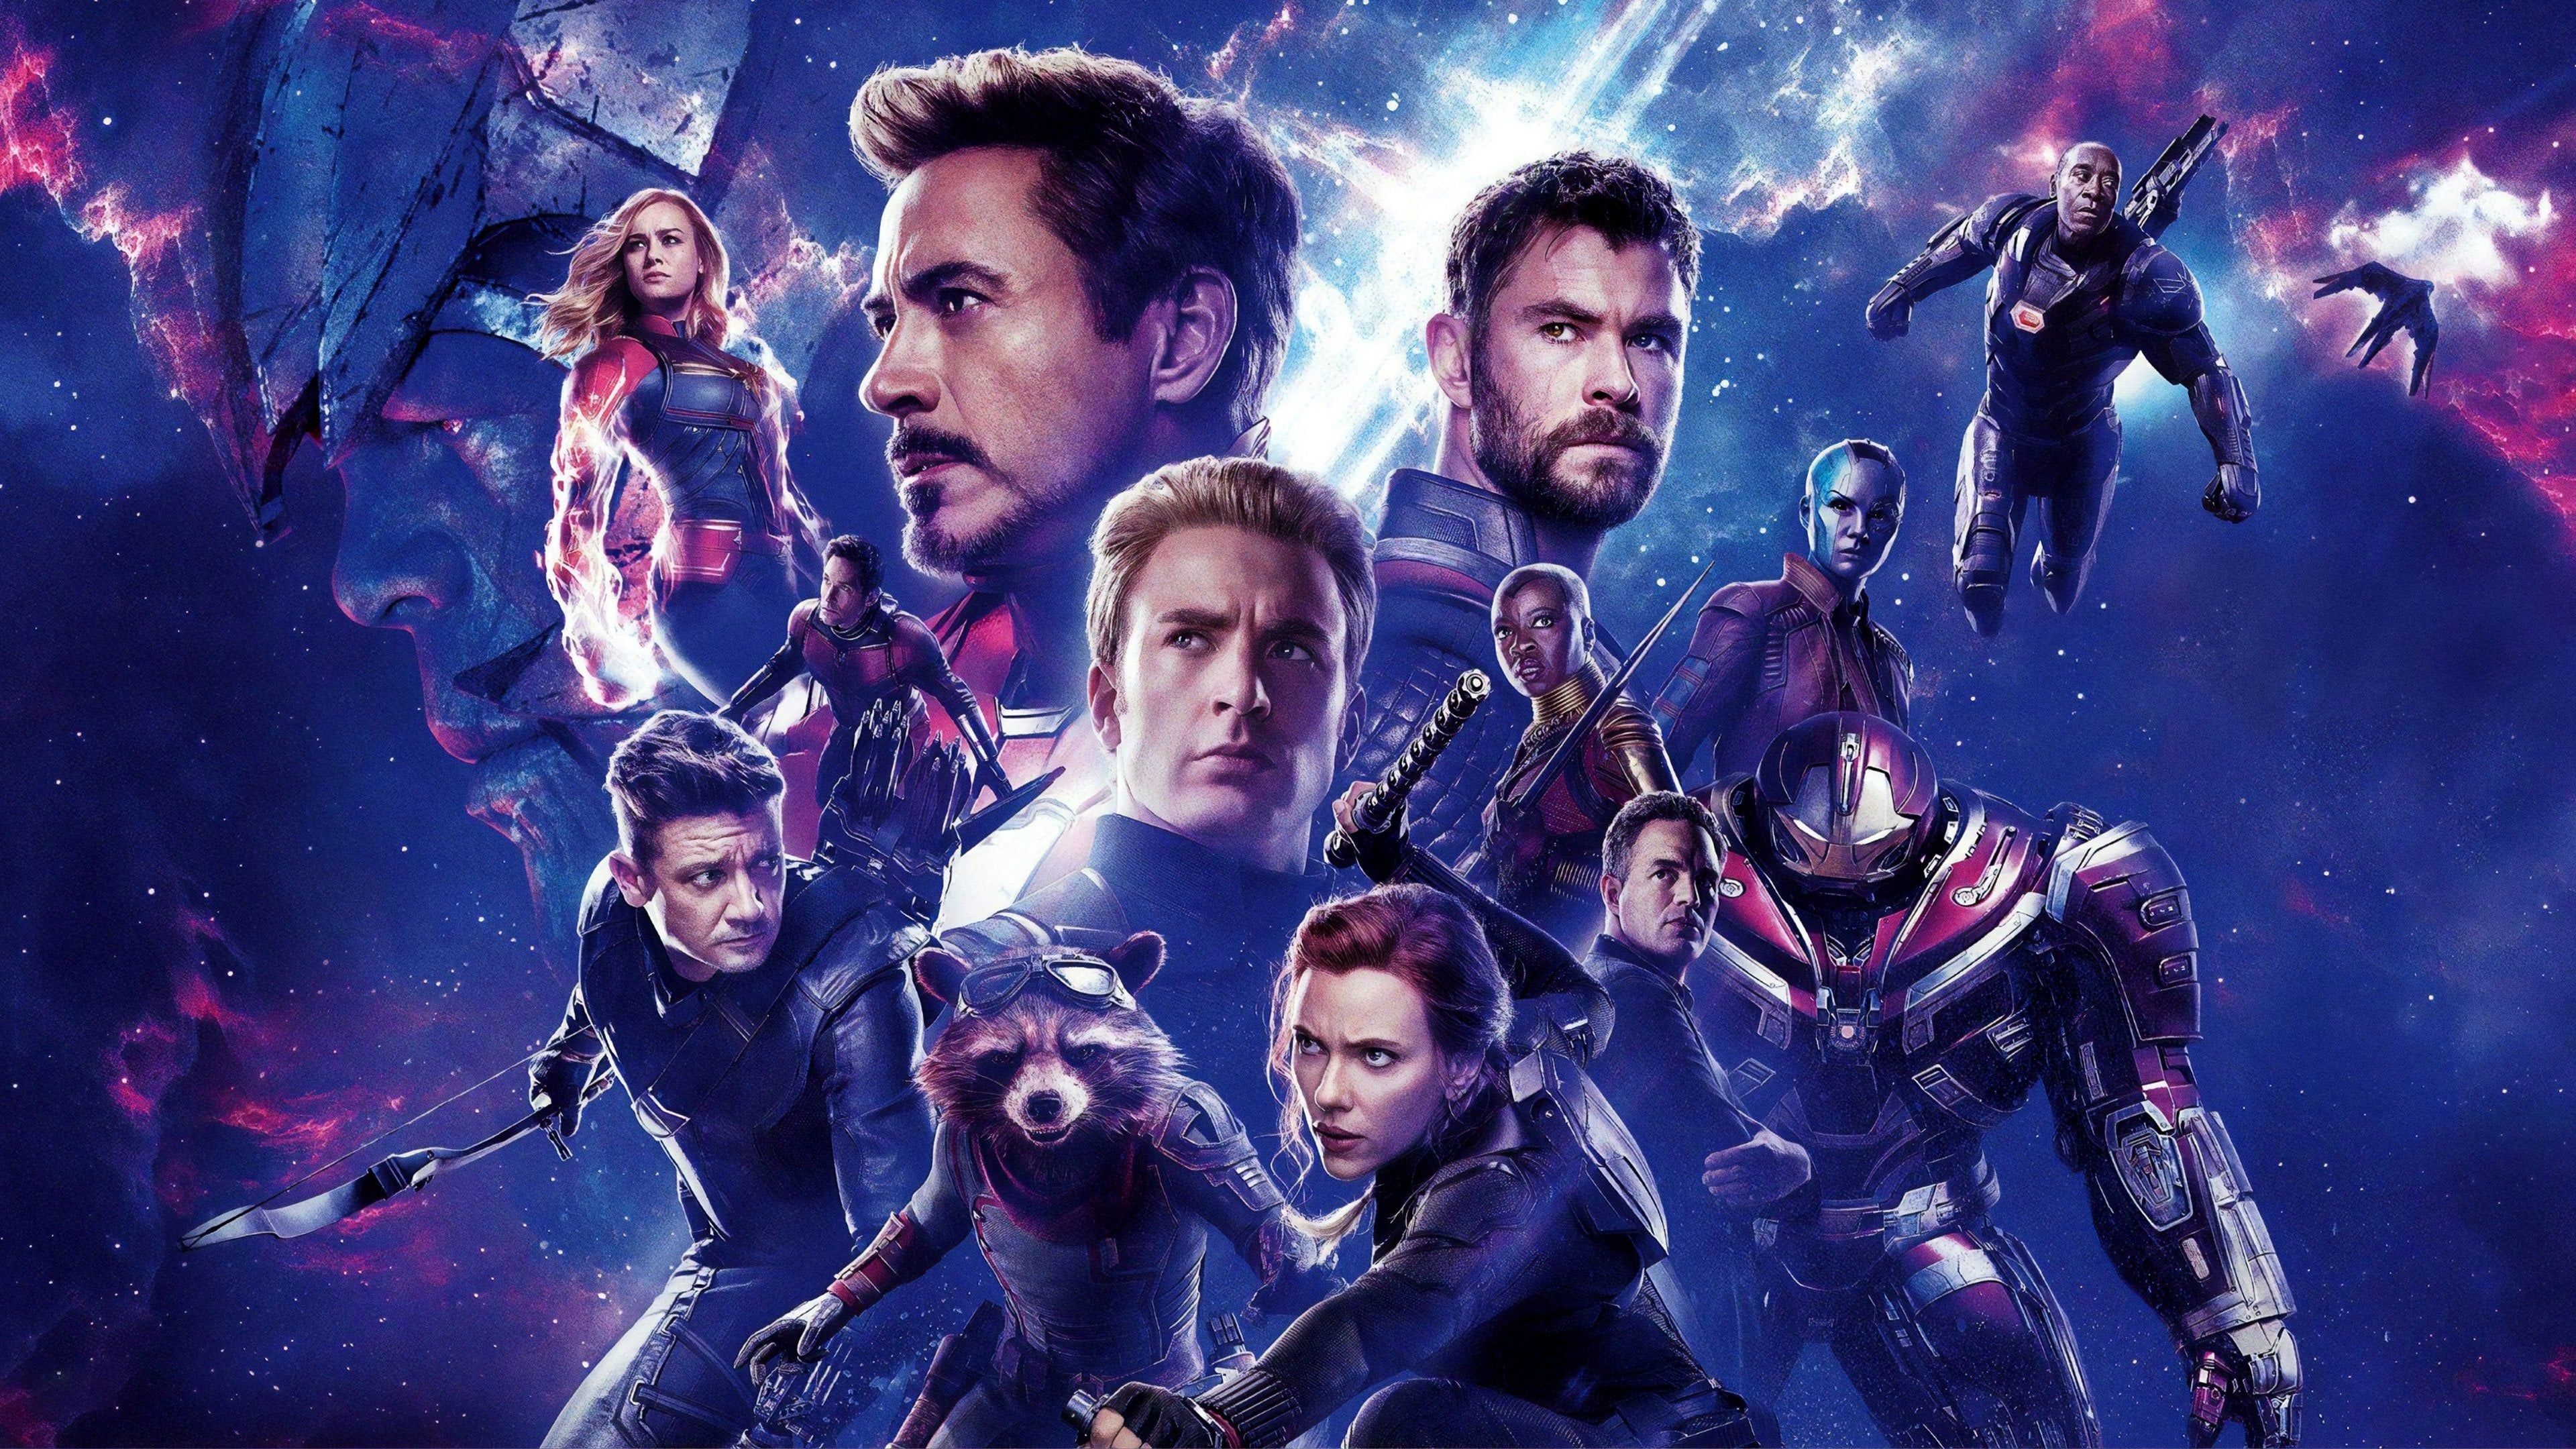 Avengers: Endgame Full Movie Online Cover Image